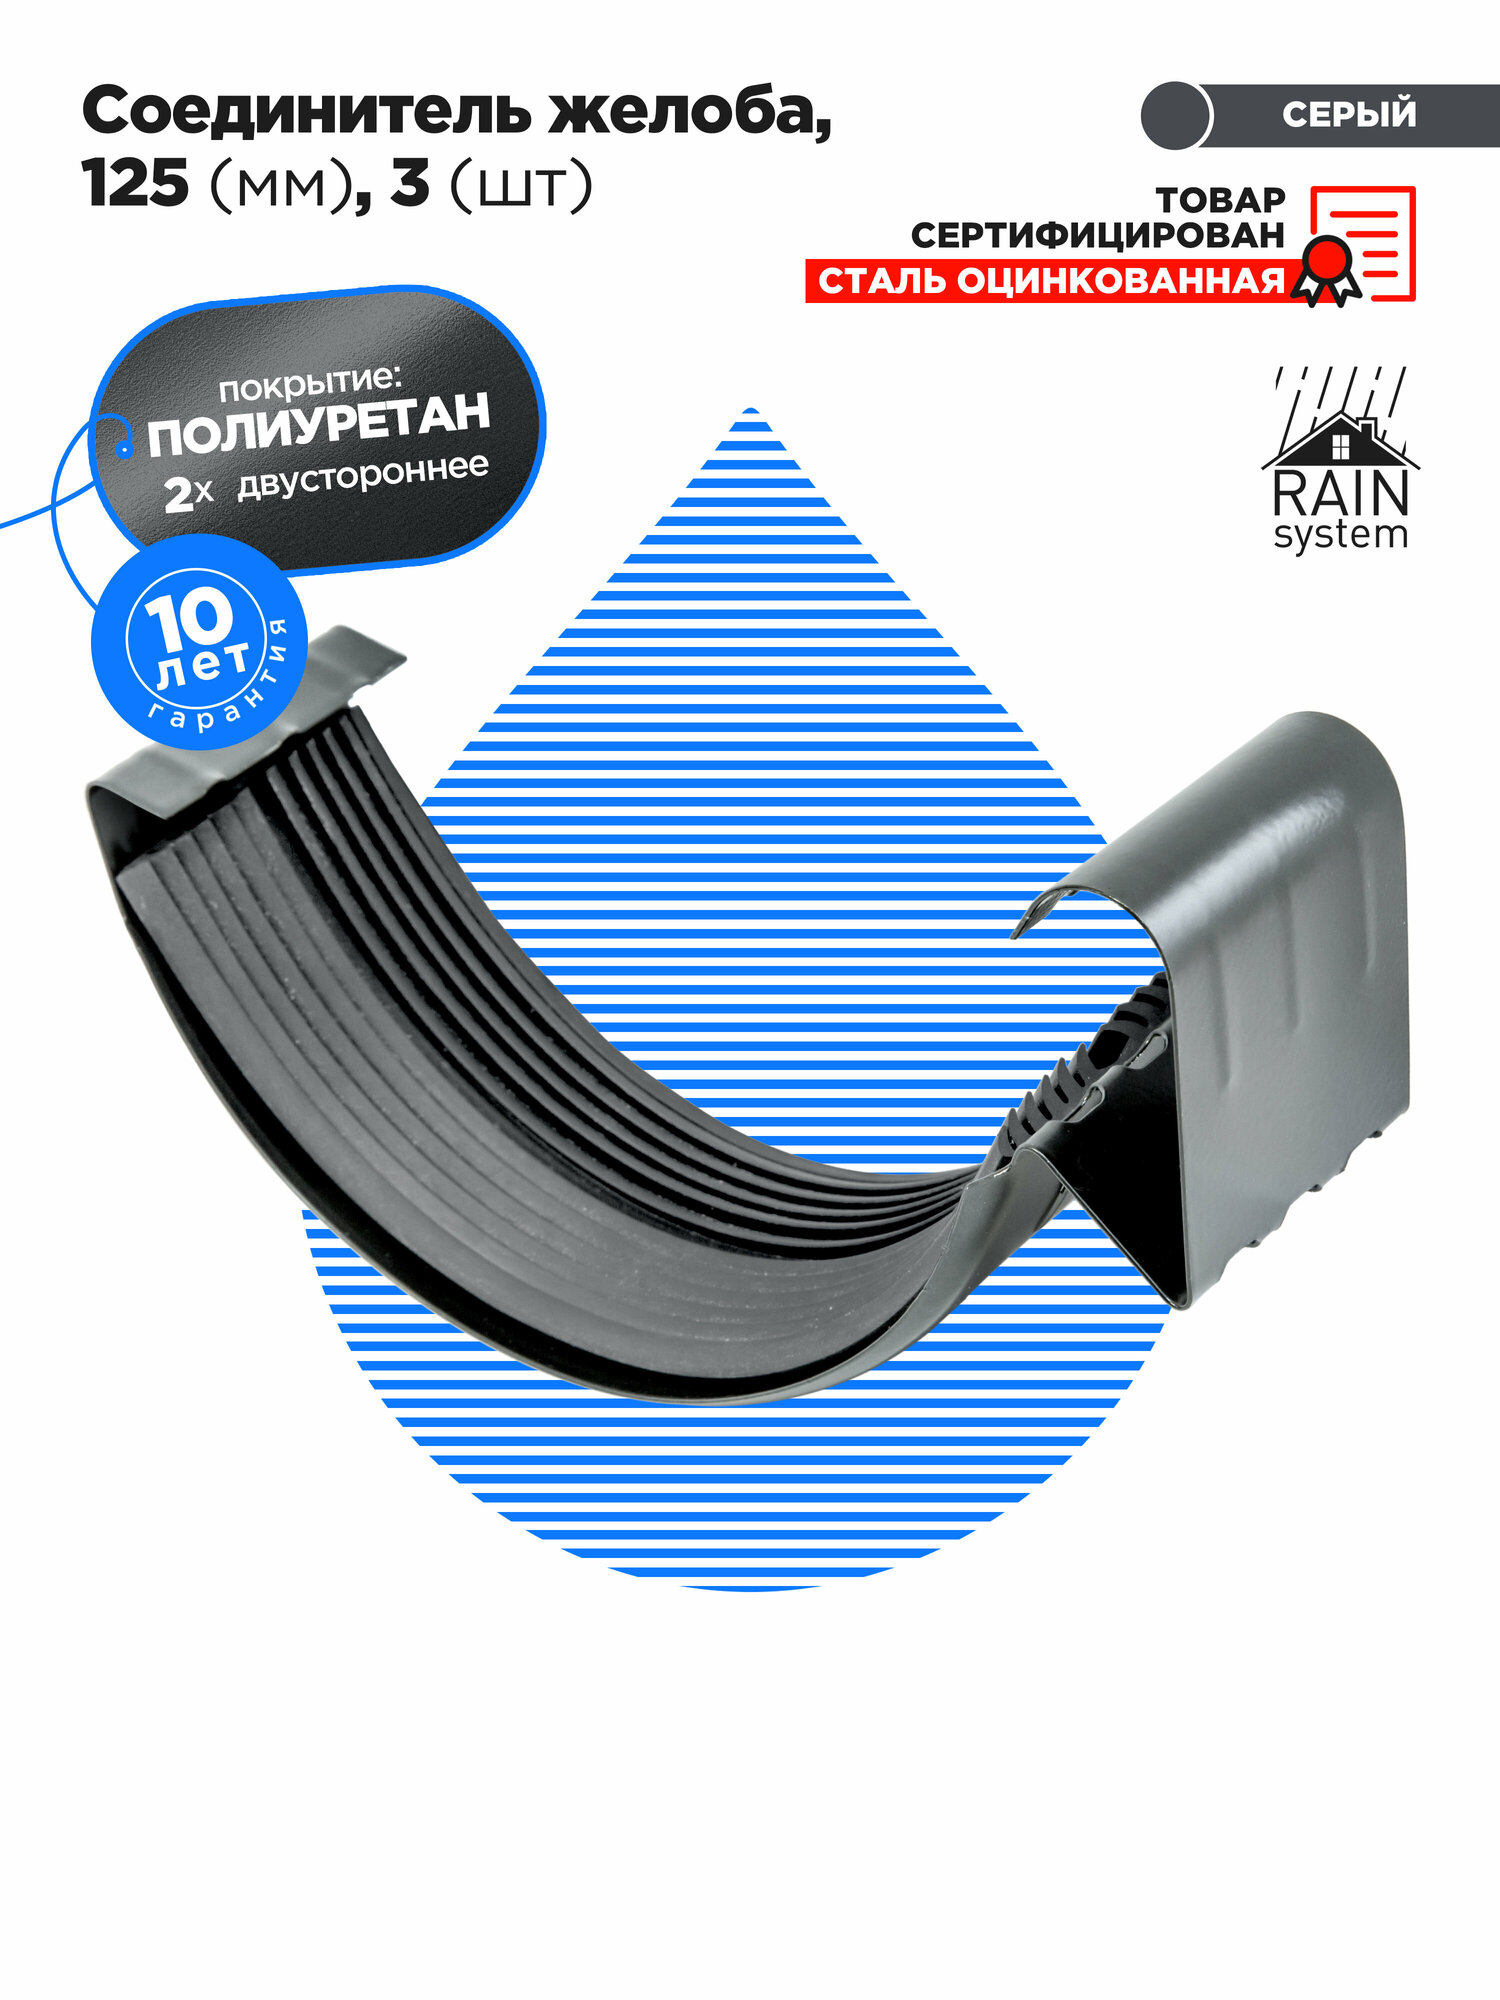 Полиуретан 125/90 Соединитель желоба RAIN SYSTEM - 3 штуки, цвет серый графит